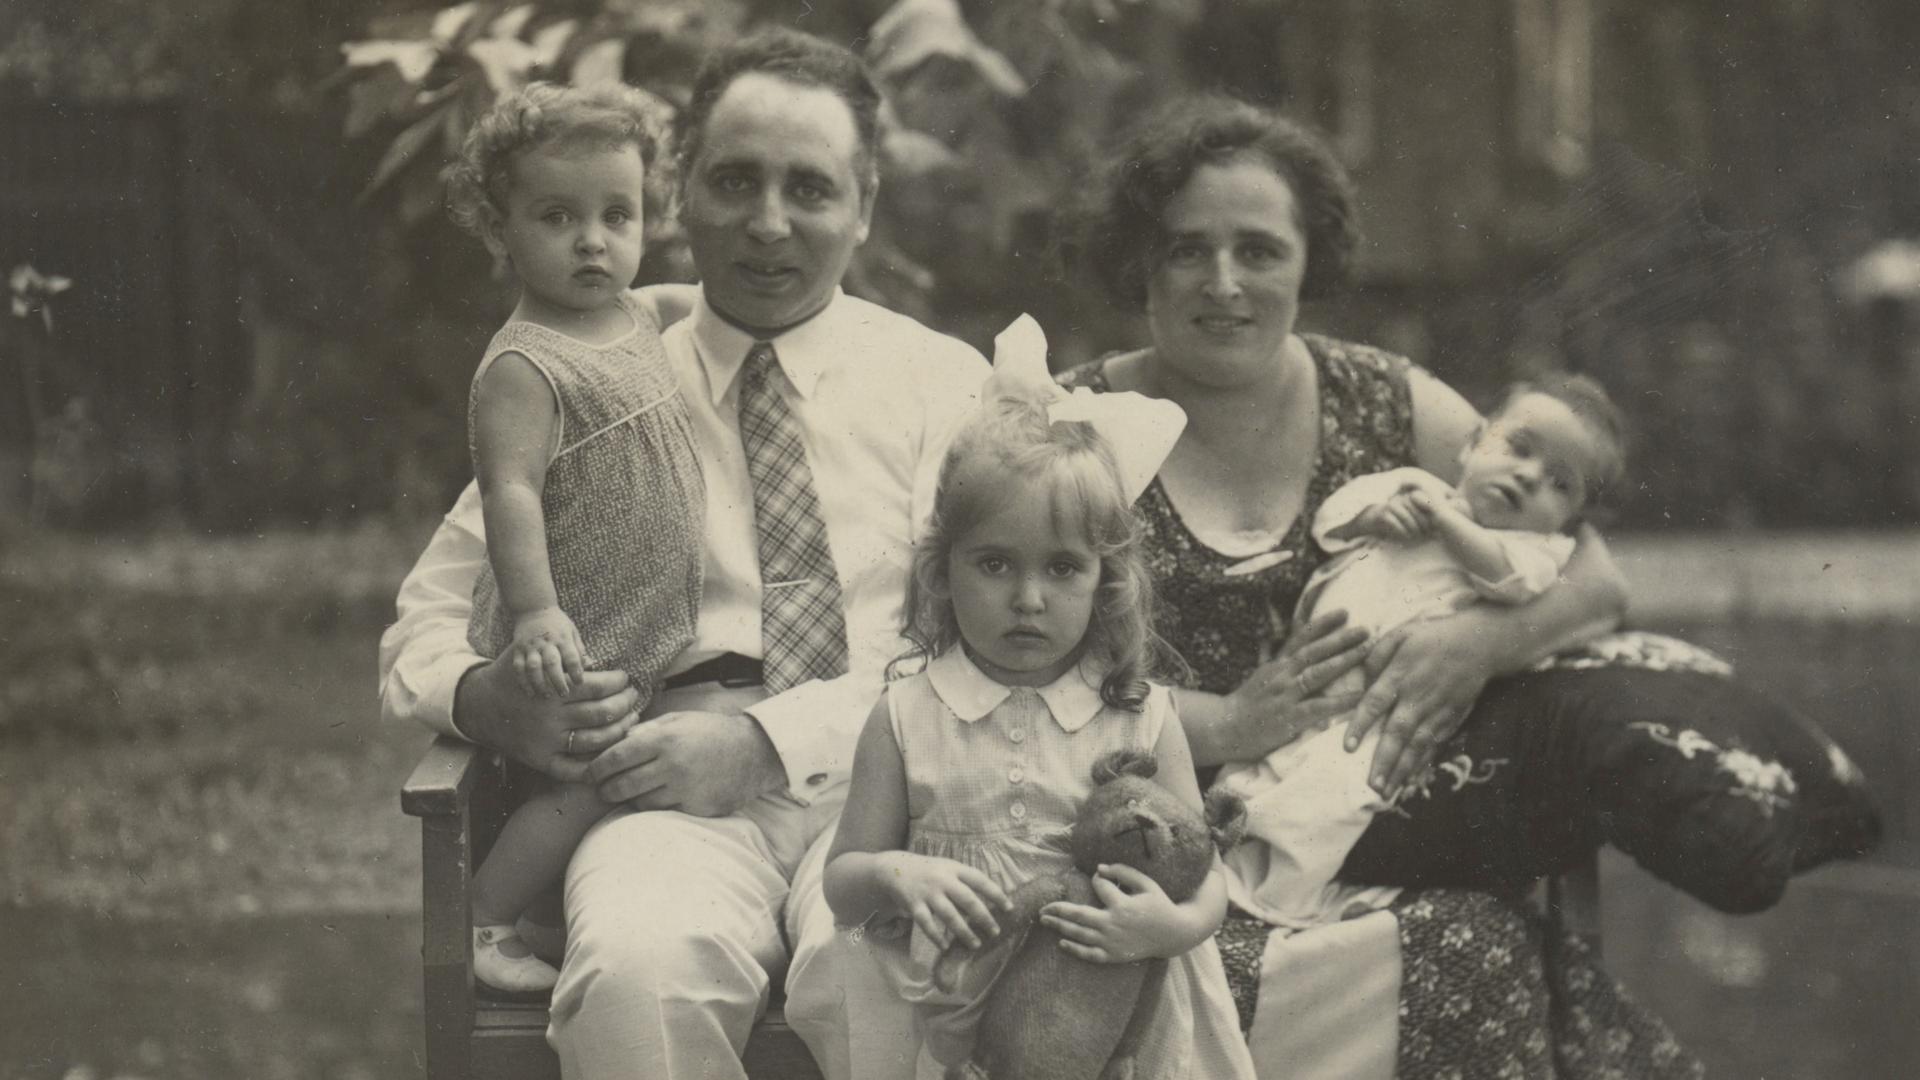 (Center Front) Mirjam Geismar de Zoete; (Center Left) father Chaim de Zoete, with daughter Judith; (Center Right) mother Sophia de Zoete, with daughter Hadassah.